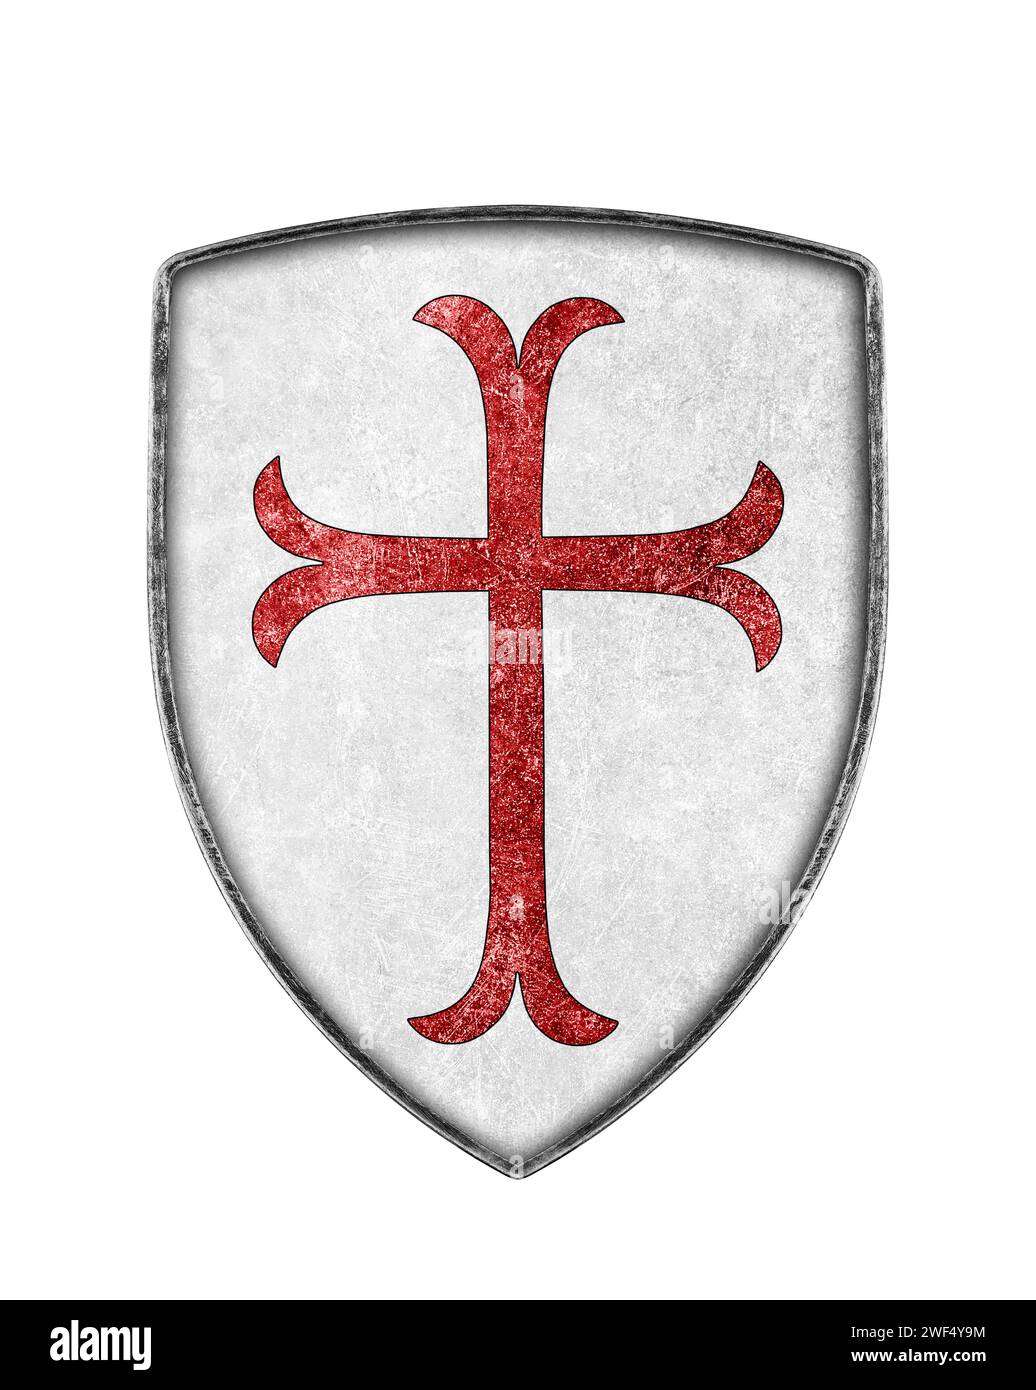 Vieux bouclier de croisaders en métal avec croix rouge isolée sur fond blanc Banque D'Images